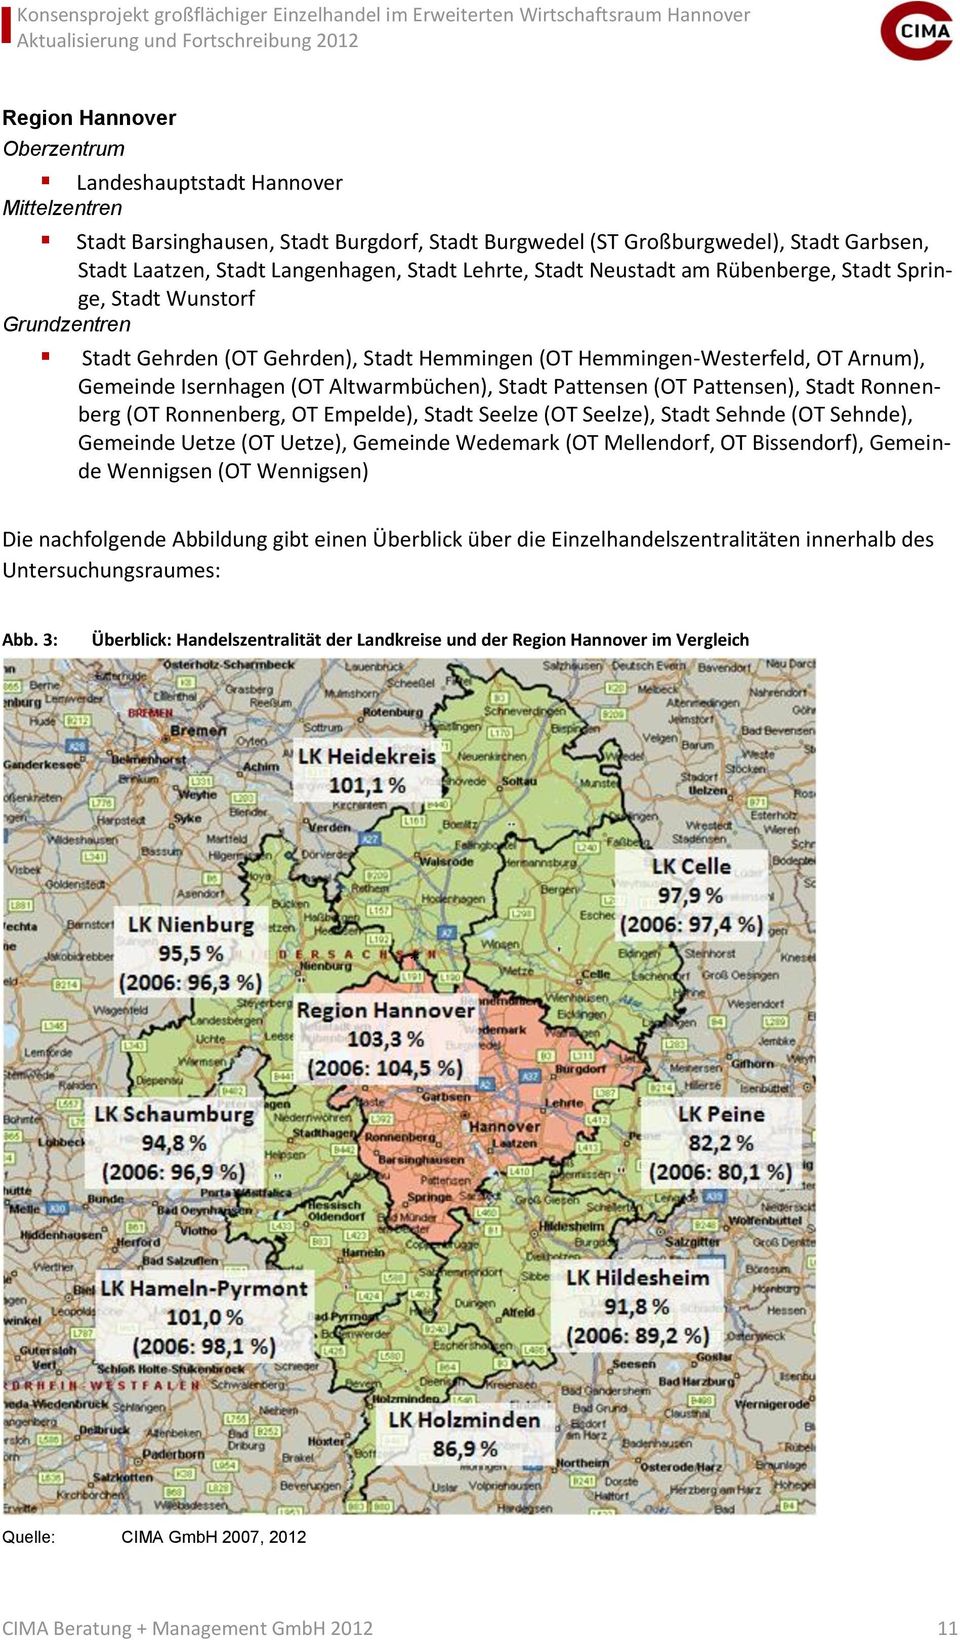 Altwarmbüchen), Stadt Pattensen (OT Pattensen), Stadt Ronnenberg (OT Ronnenberg, OT Empelde), Stadt Seelze (OT Seelze), Stadt Sehnde (OT Sehnde), Gemeinde Uetze (OT Uetze), Gemeinde Wedemark (OT